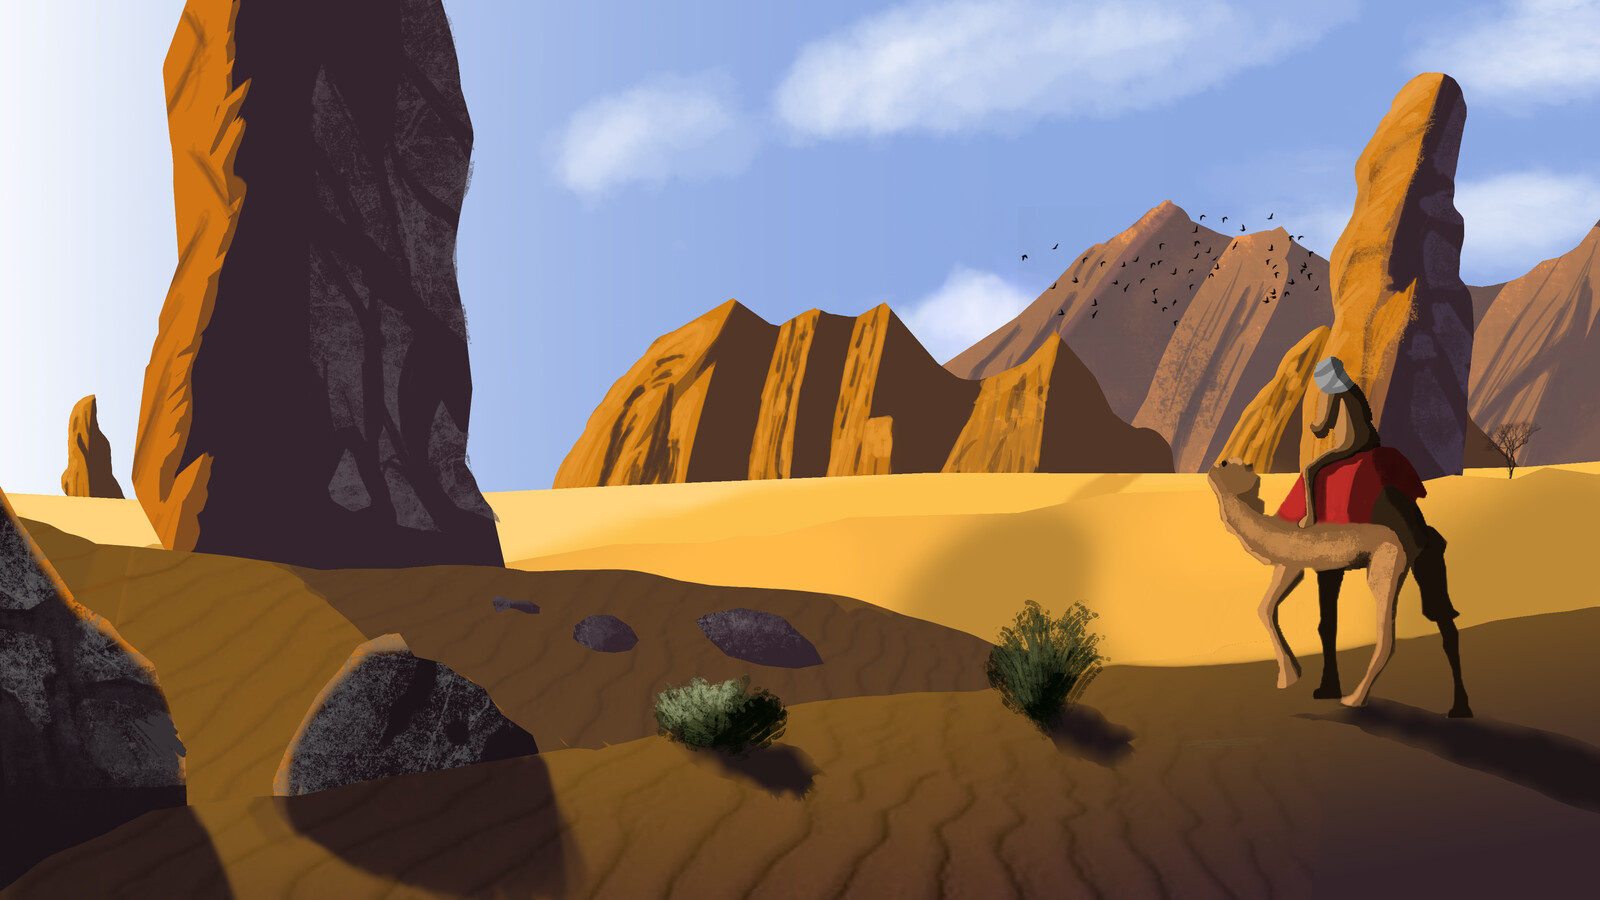 Concept art of a desert